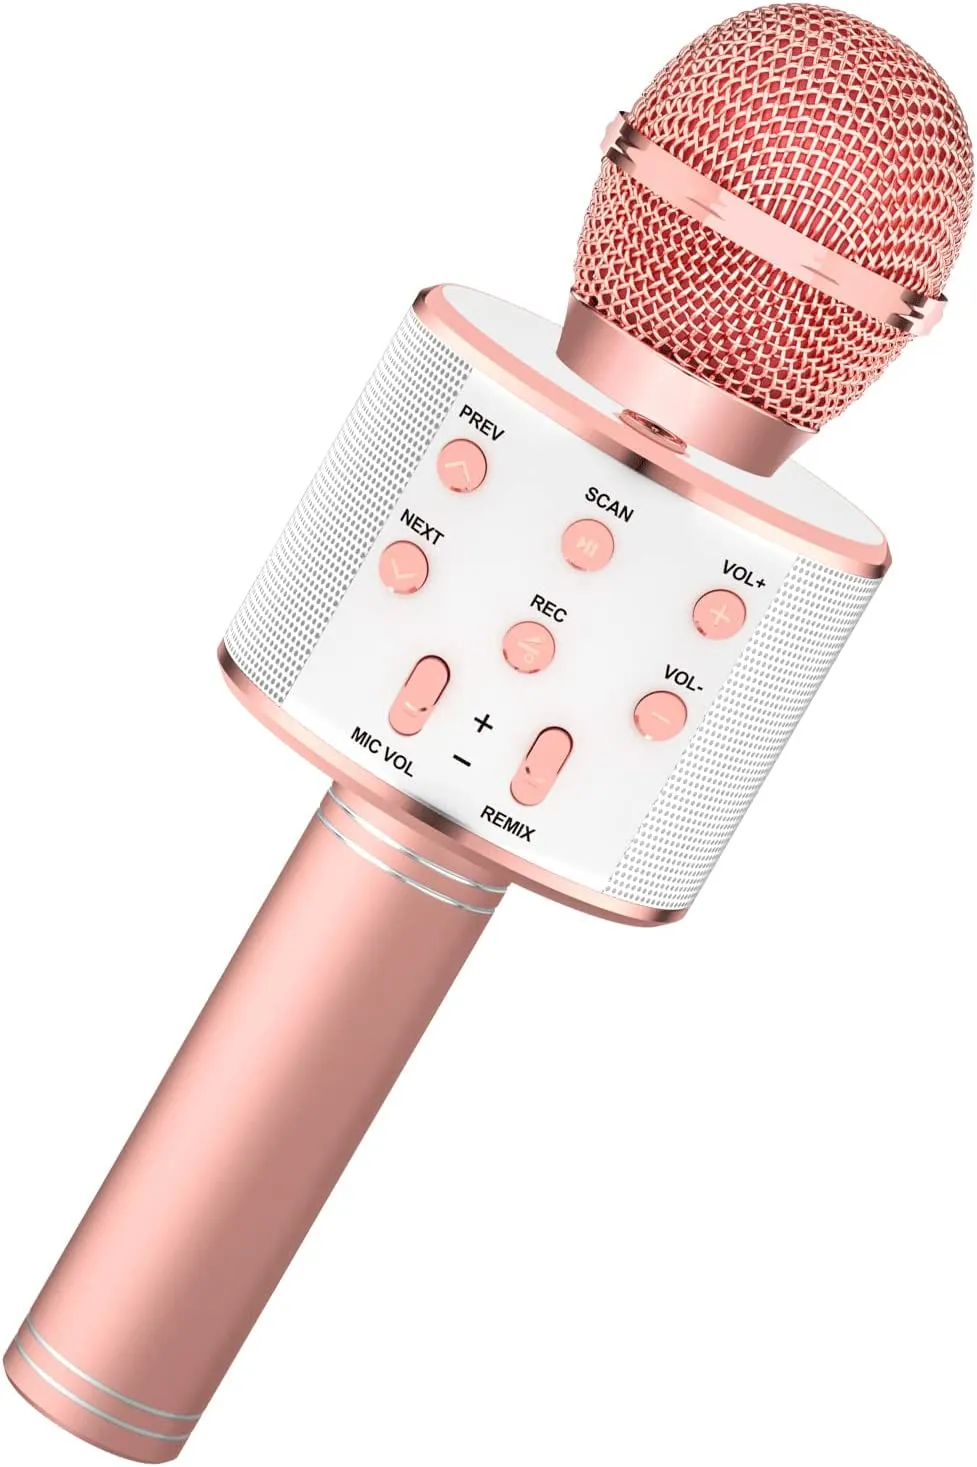 Nouveau microphone pour enfants, microphone pour enfants pour chanter  microphone dynamique portable karaoké portable microphone filaire pour  filles